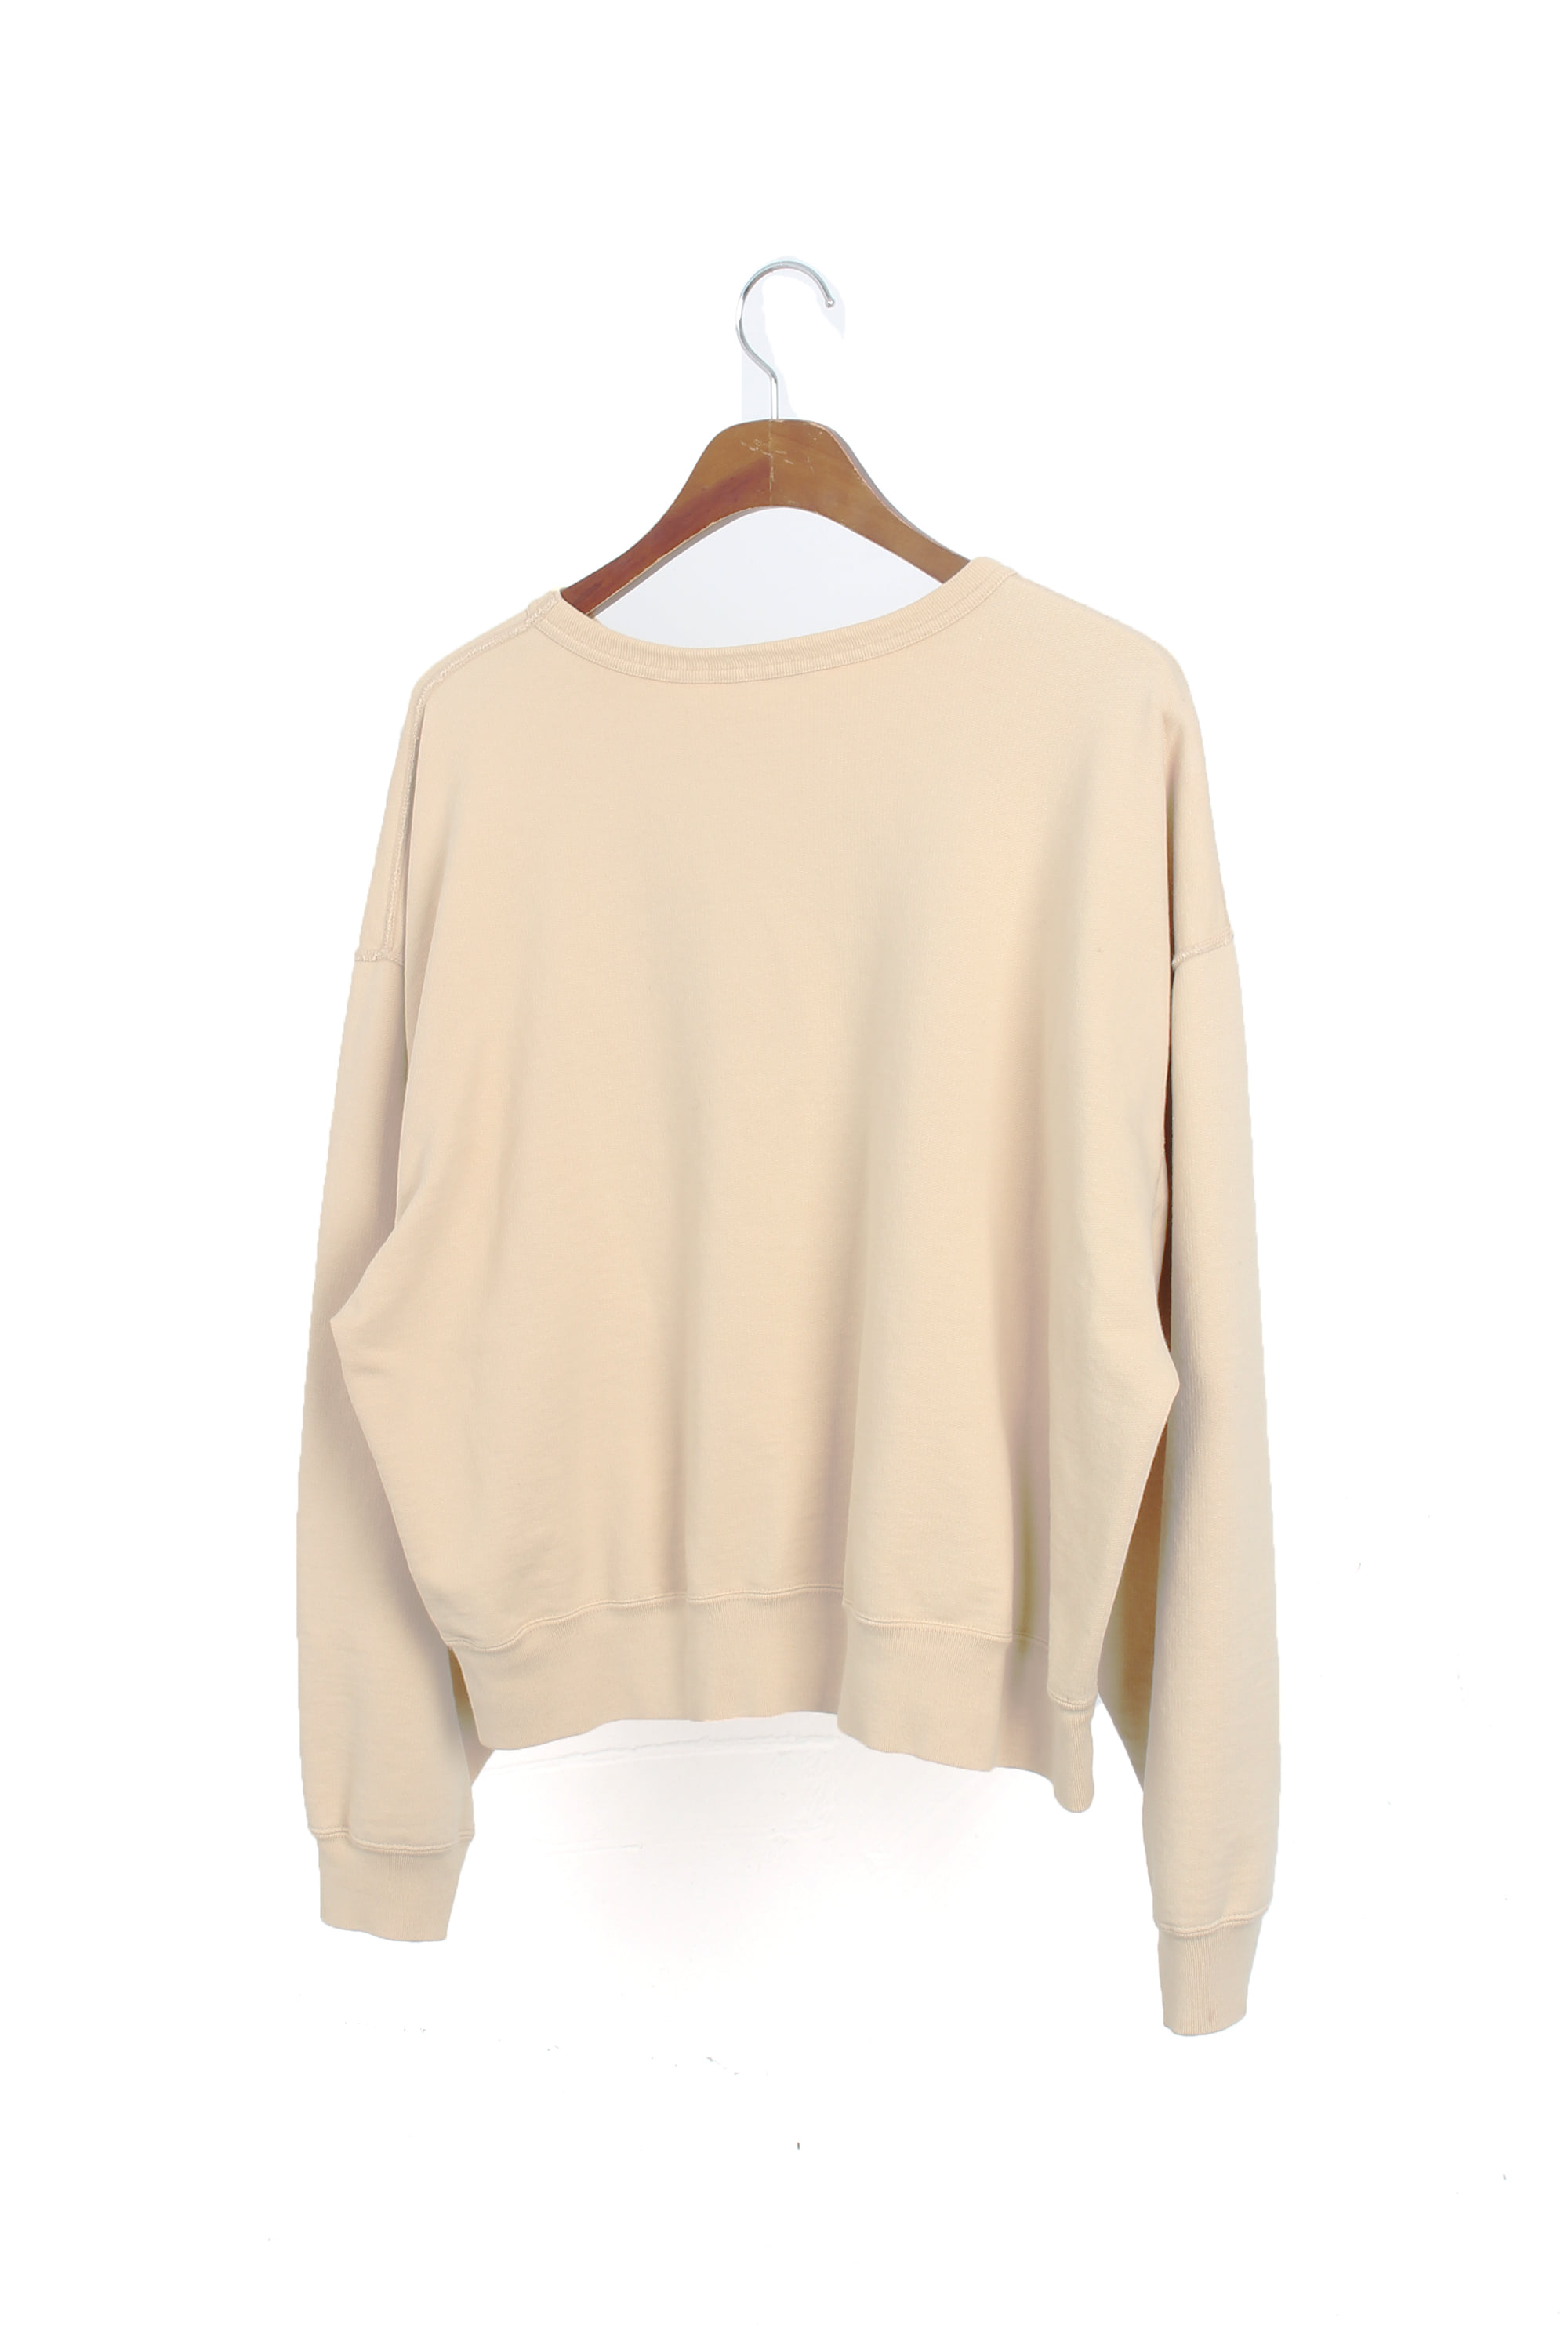 AURALEE Super soft Sweatshirts(1)